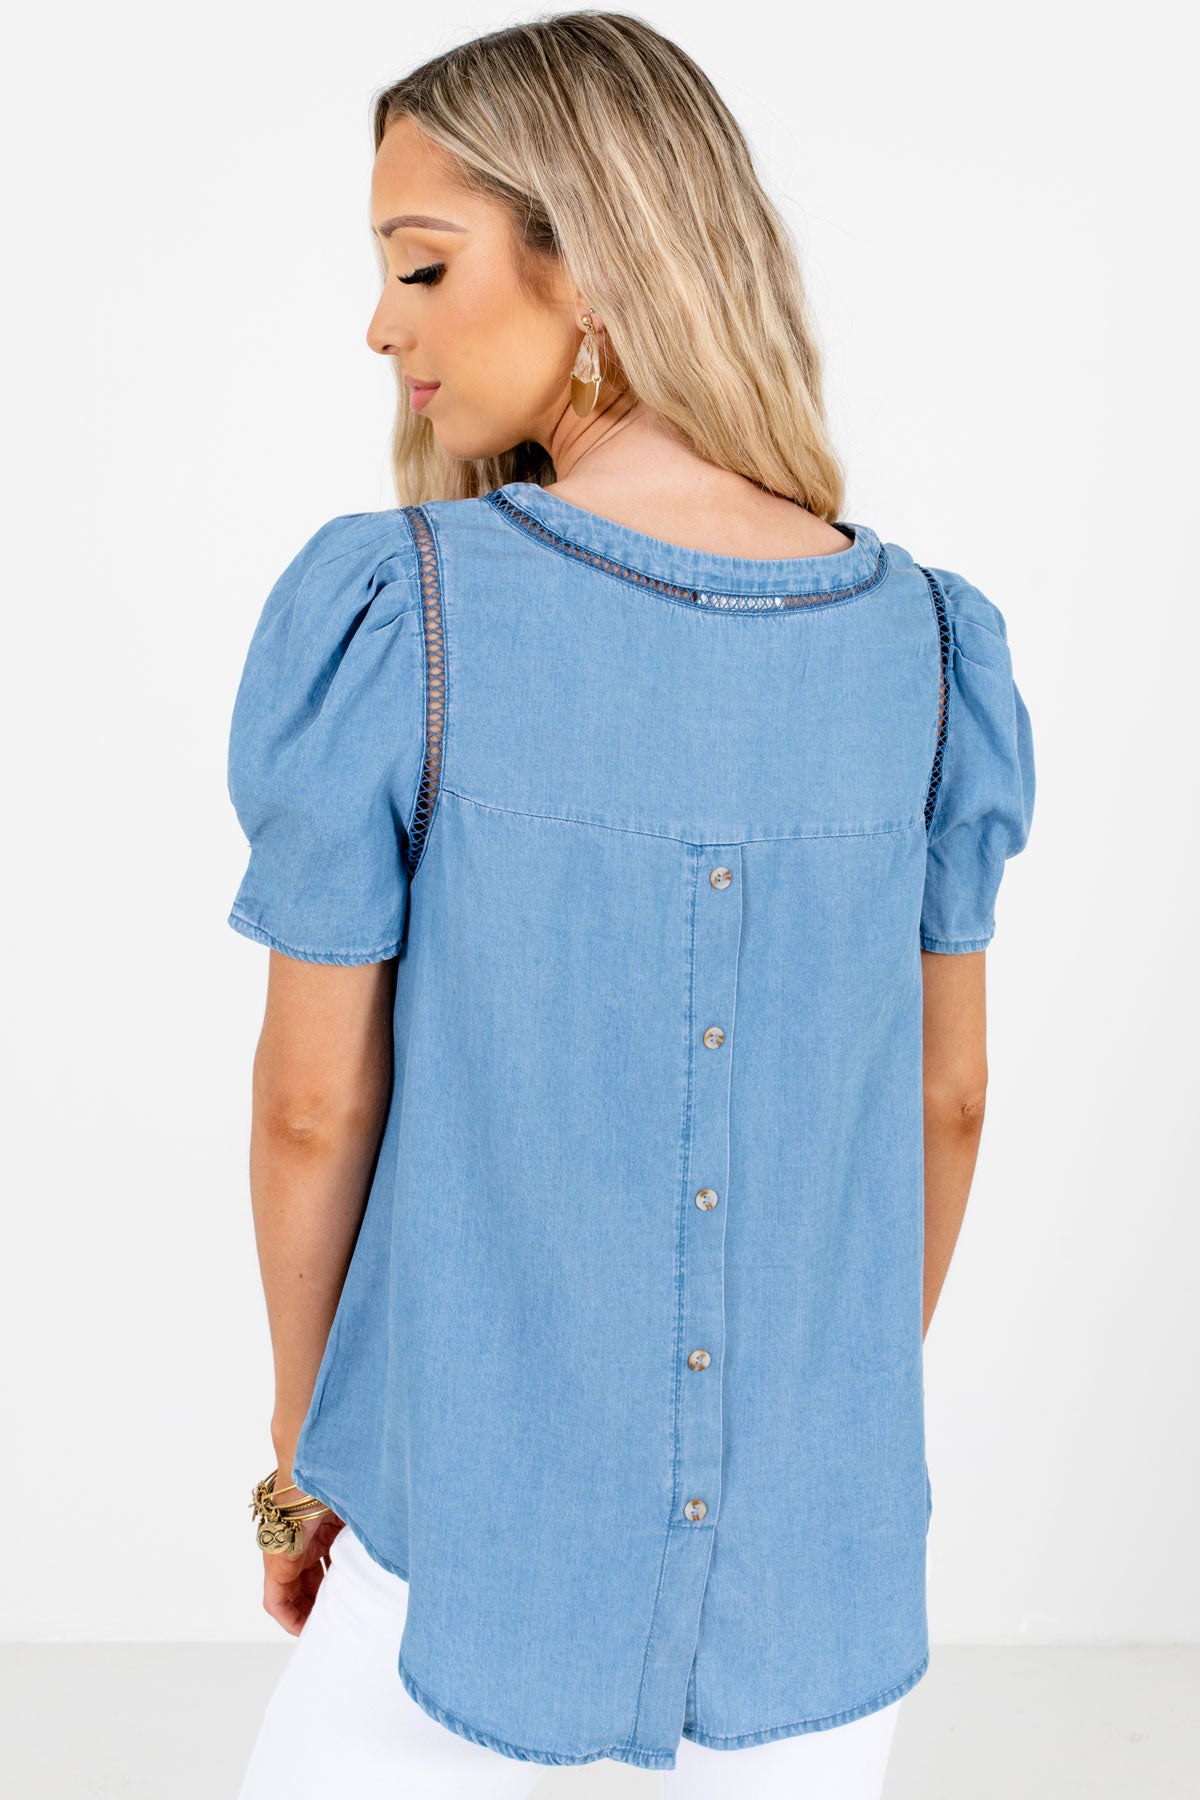 Women's Blue Decorative Button Boutique Blouse